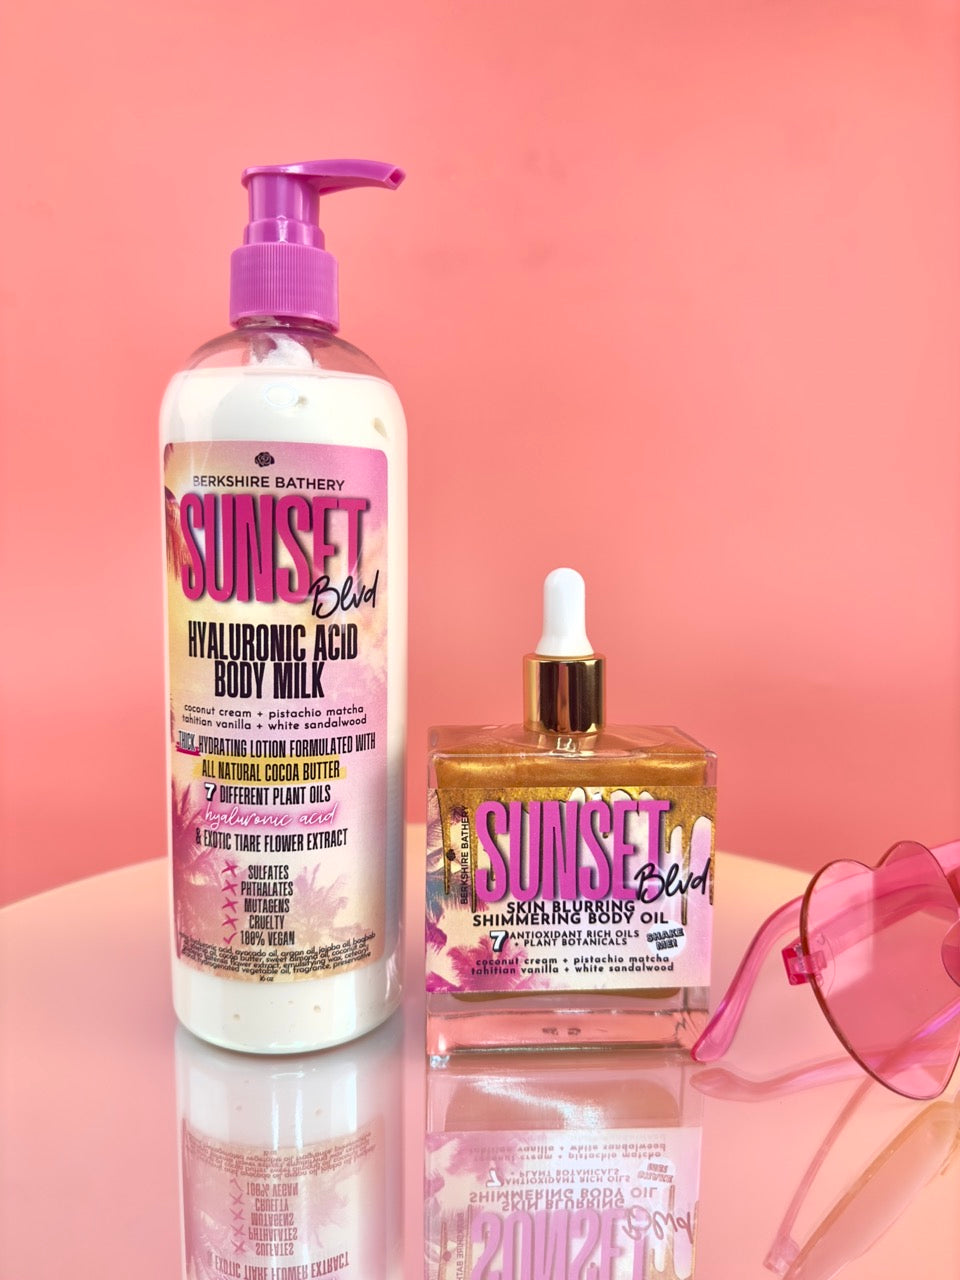 SUNSET BOULEVARD | Skin Blurring Shimmering Body Oil 3.40oz